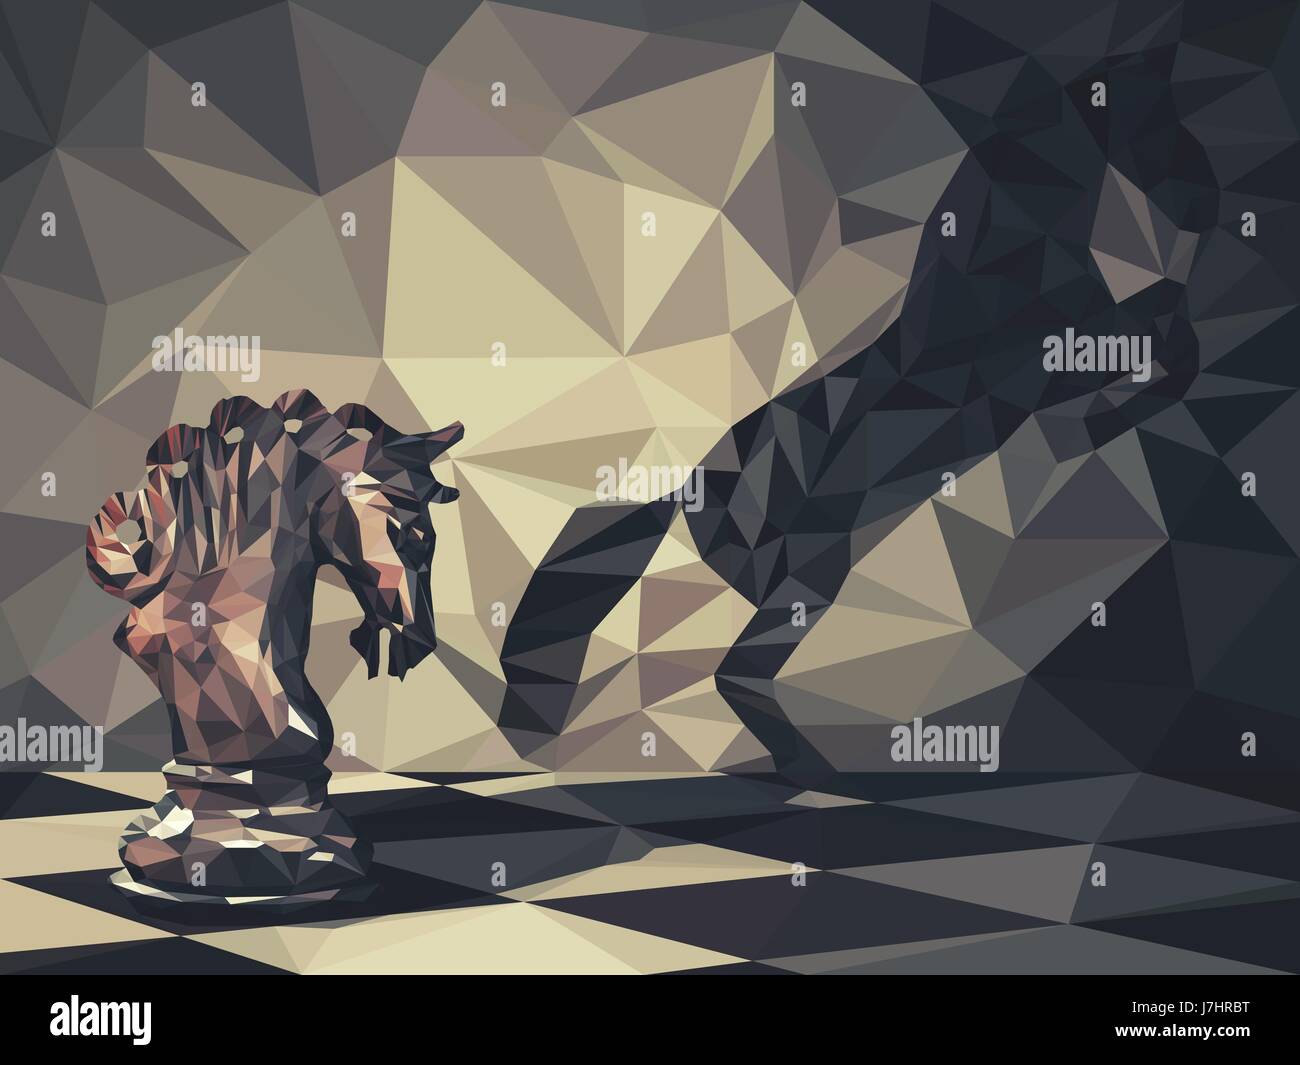 Low poly la conception 3D de pièces d'échecs chevalier jette une ombre d'un cheval sauvage sur le mur. La triangulation de vecteur, symbole d'aspirations d'affaires et leader Illustration de Vecteur